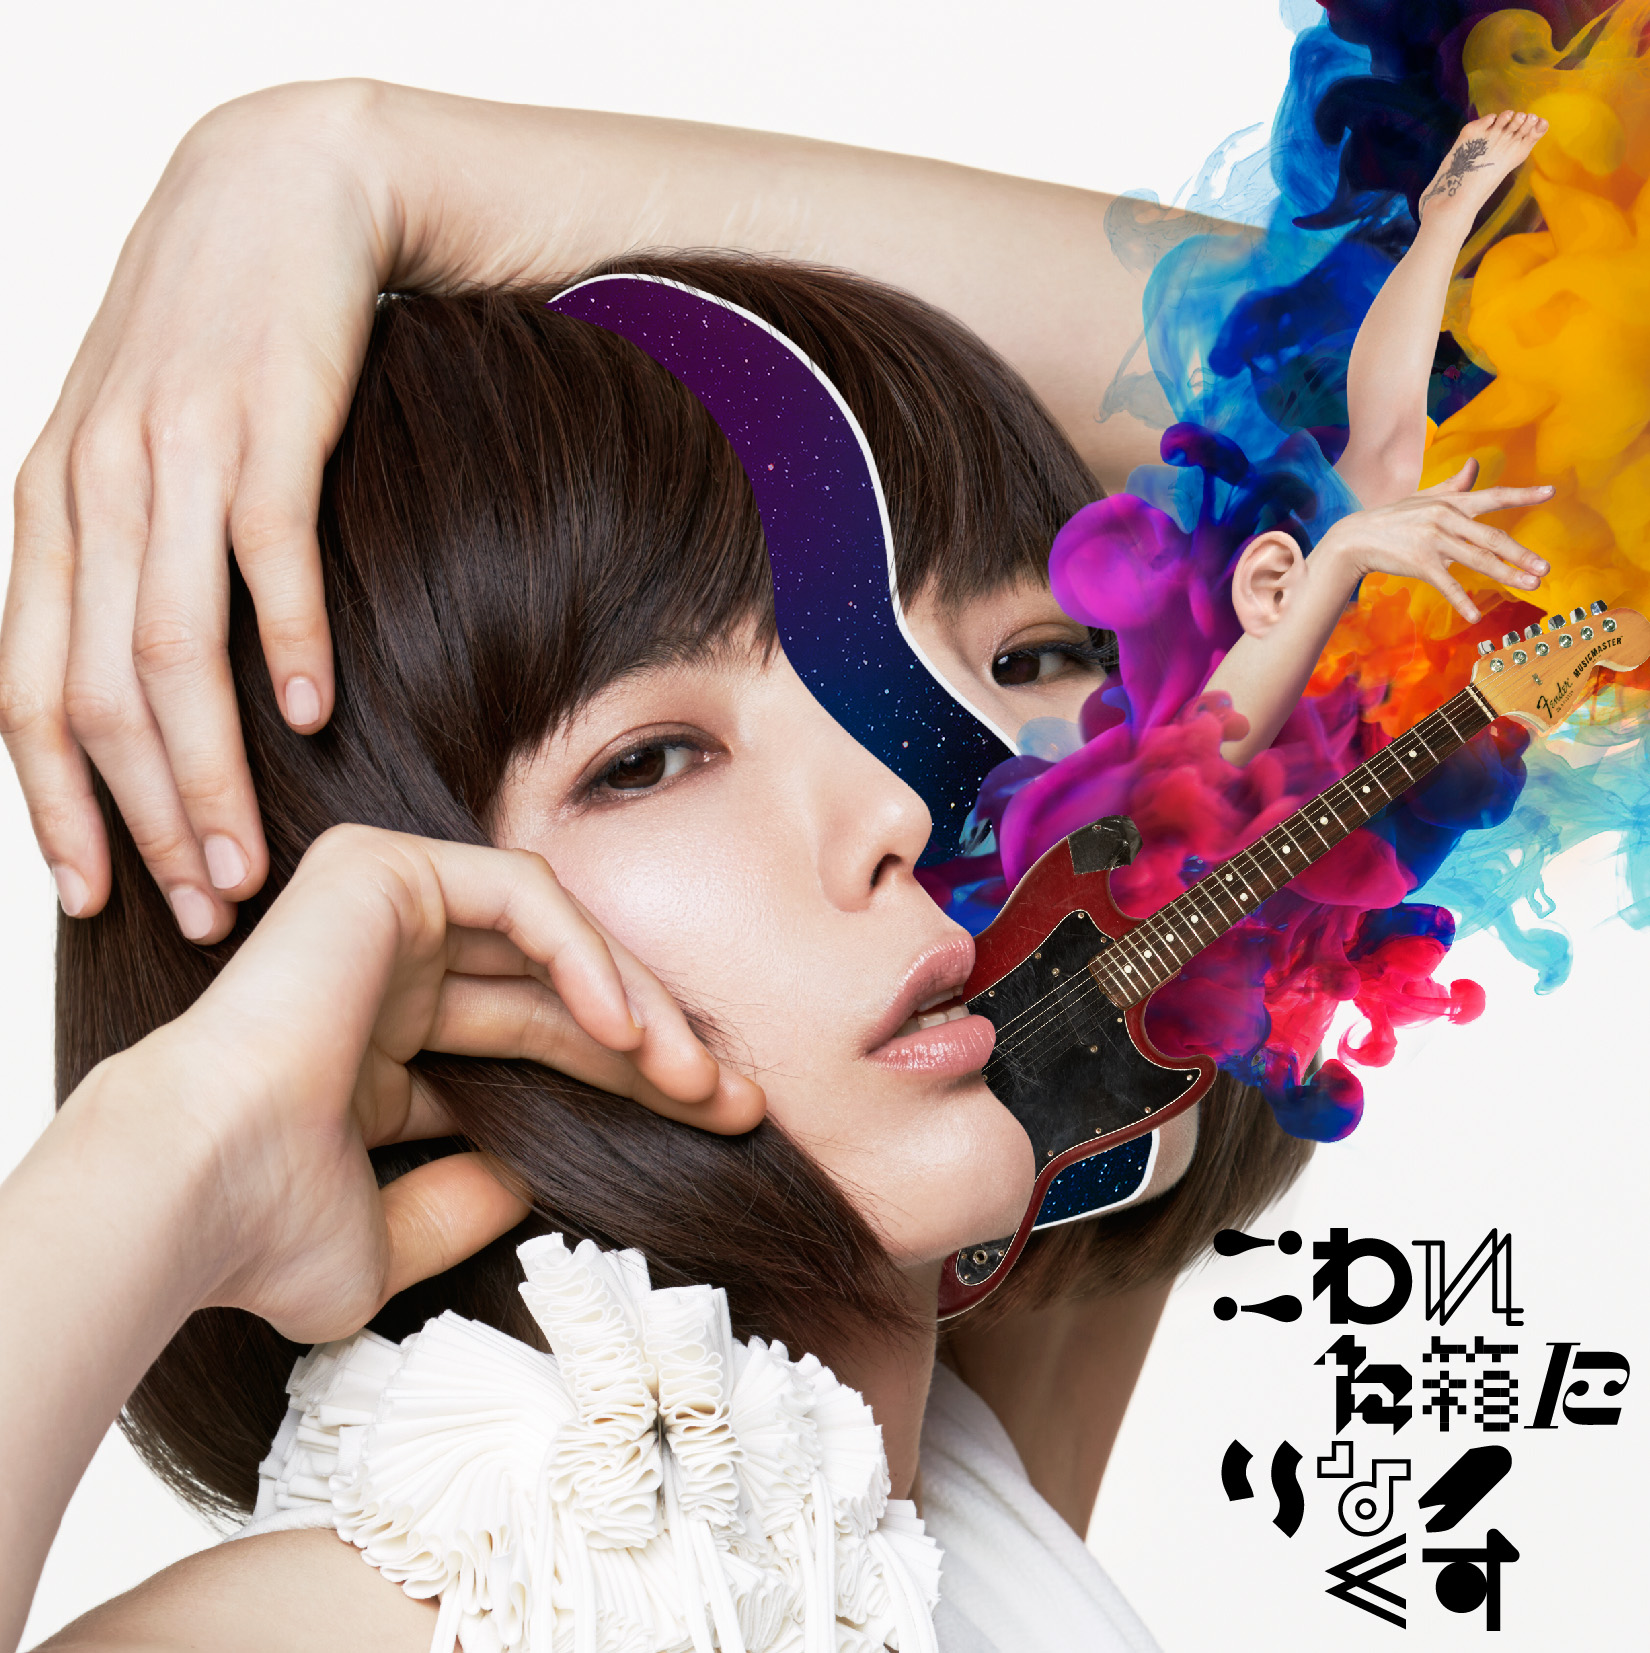 20151126.02 Mariko Goto - Kowareta Hako ni Rinakkusu cover 2.jpg